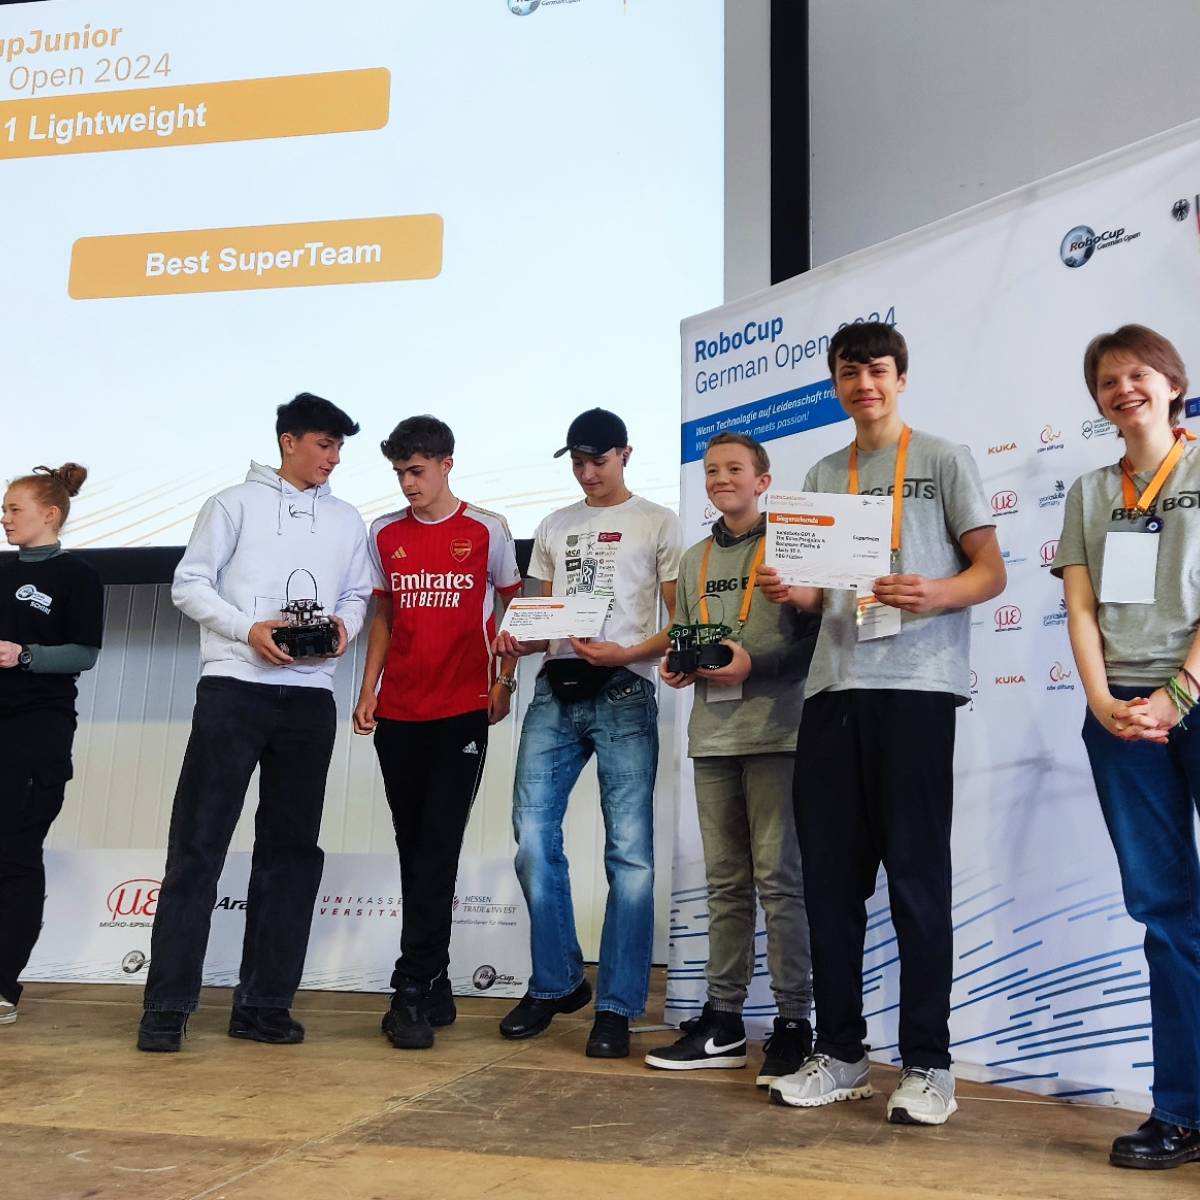 RoboCup German Open 2024: BBG Füchse beeindrucken mit herausragenden Leistungen 